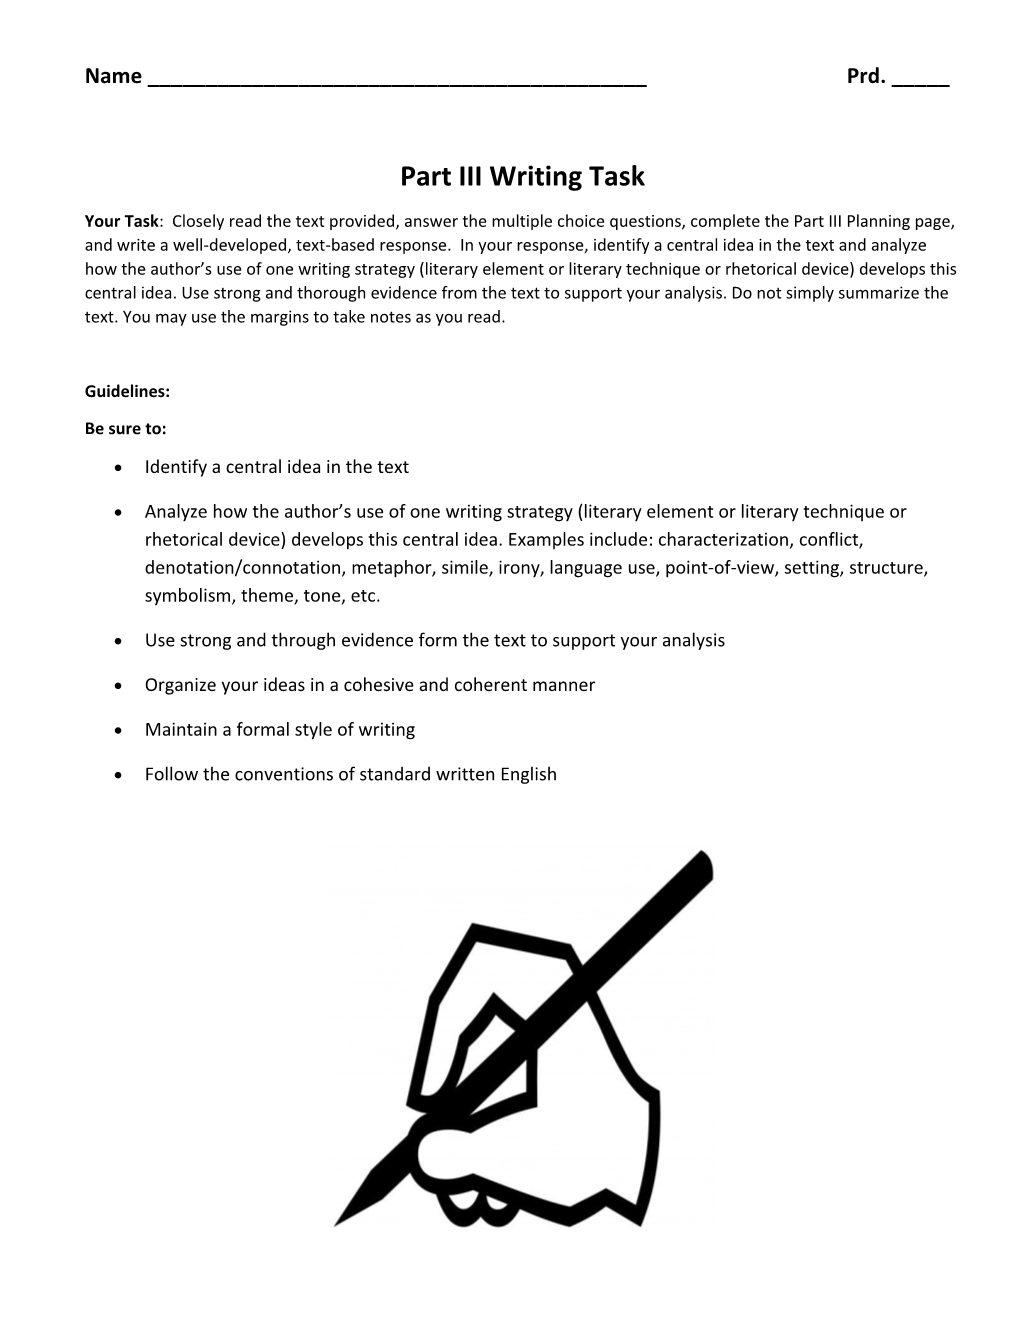 Part III Writing Task